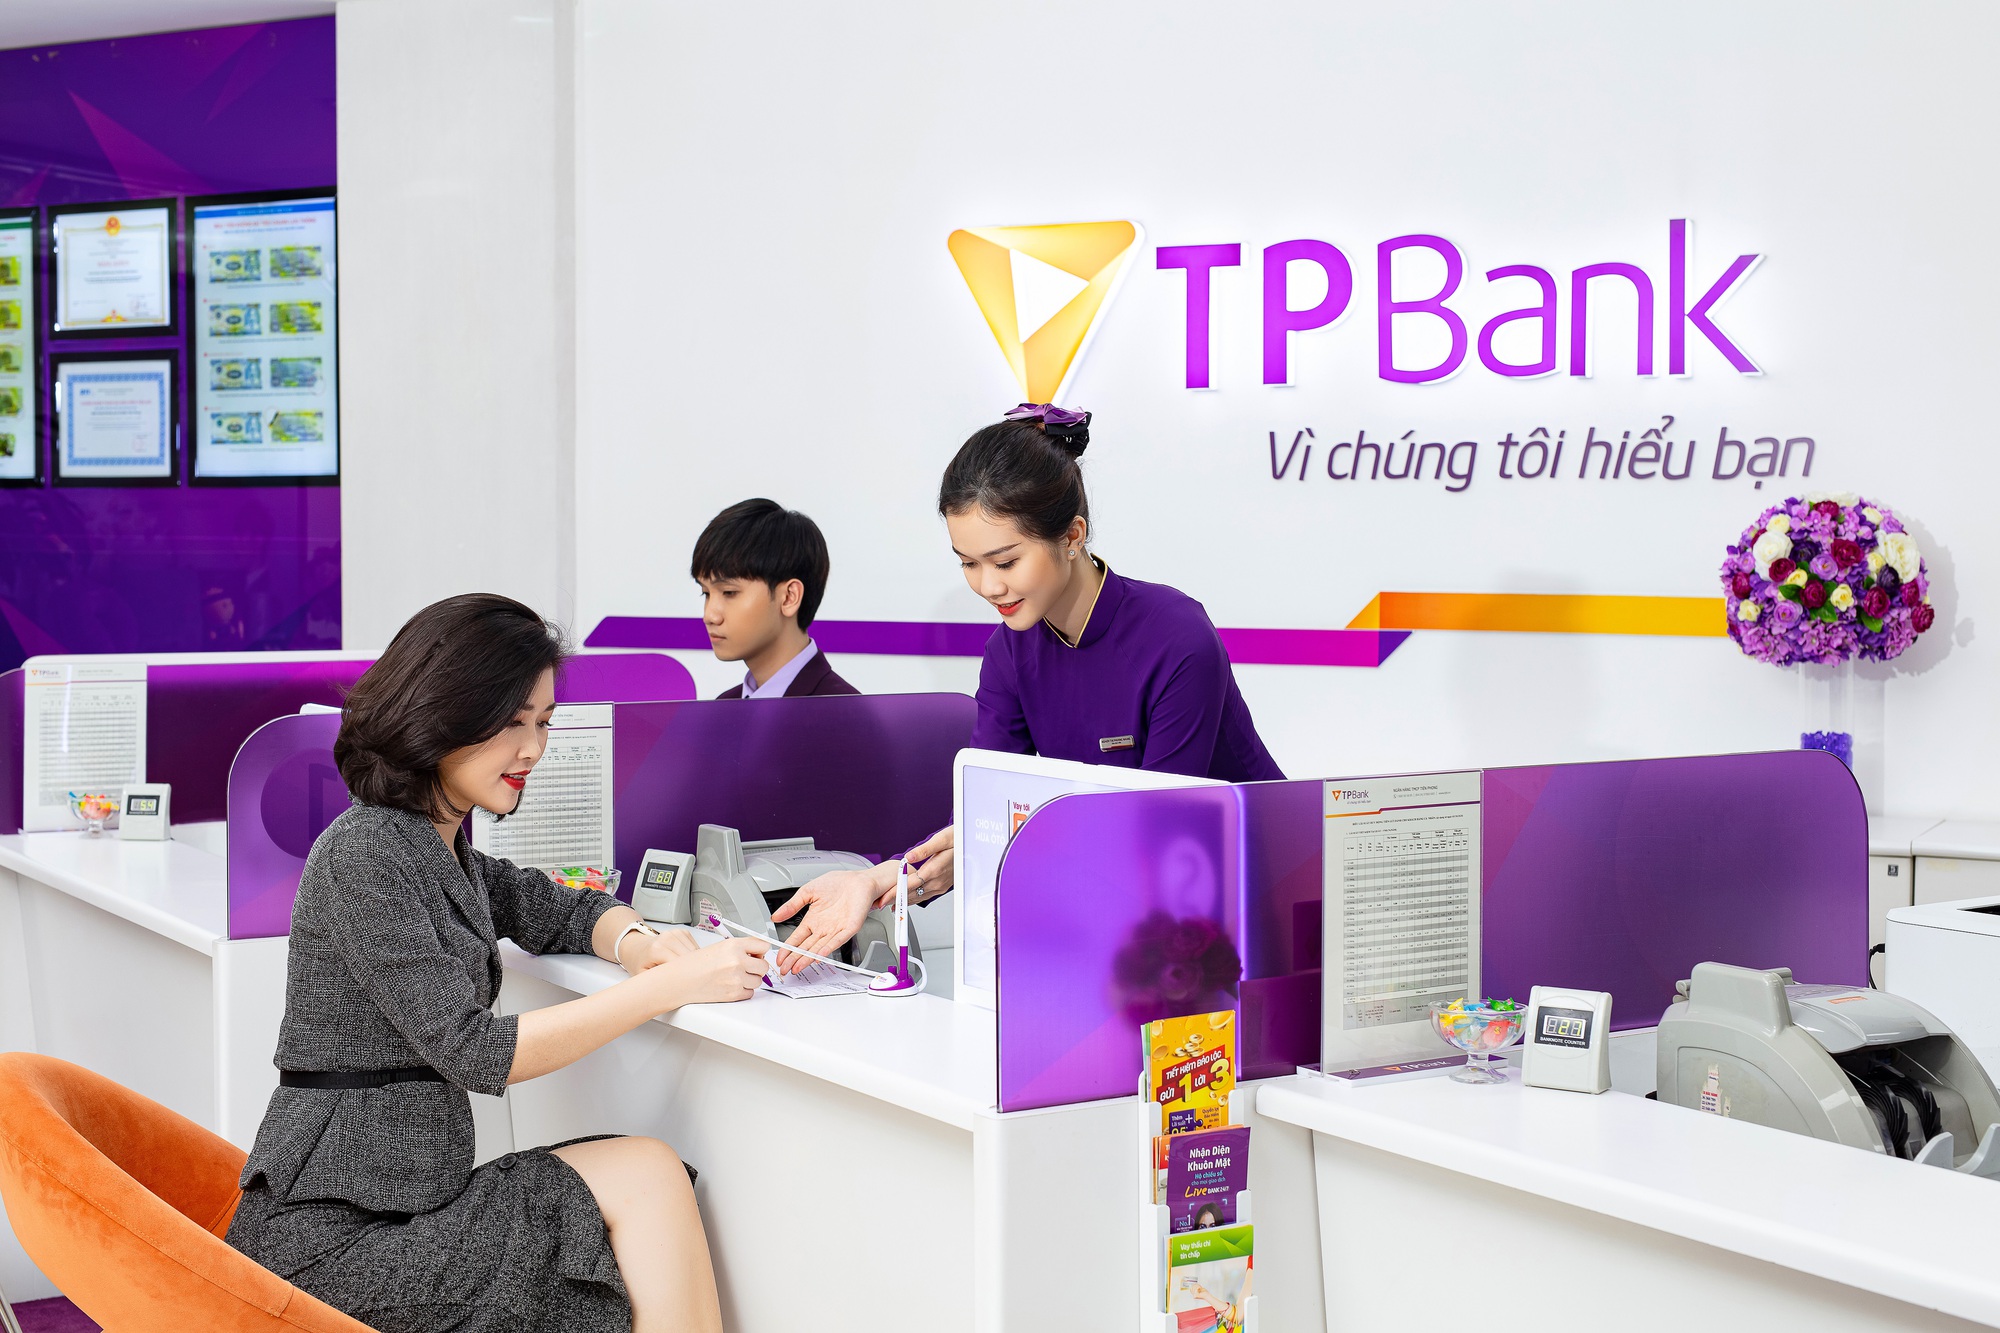 5 điểm tạo nên khác biệt TPBank - Ảnh 1.